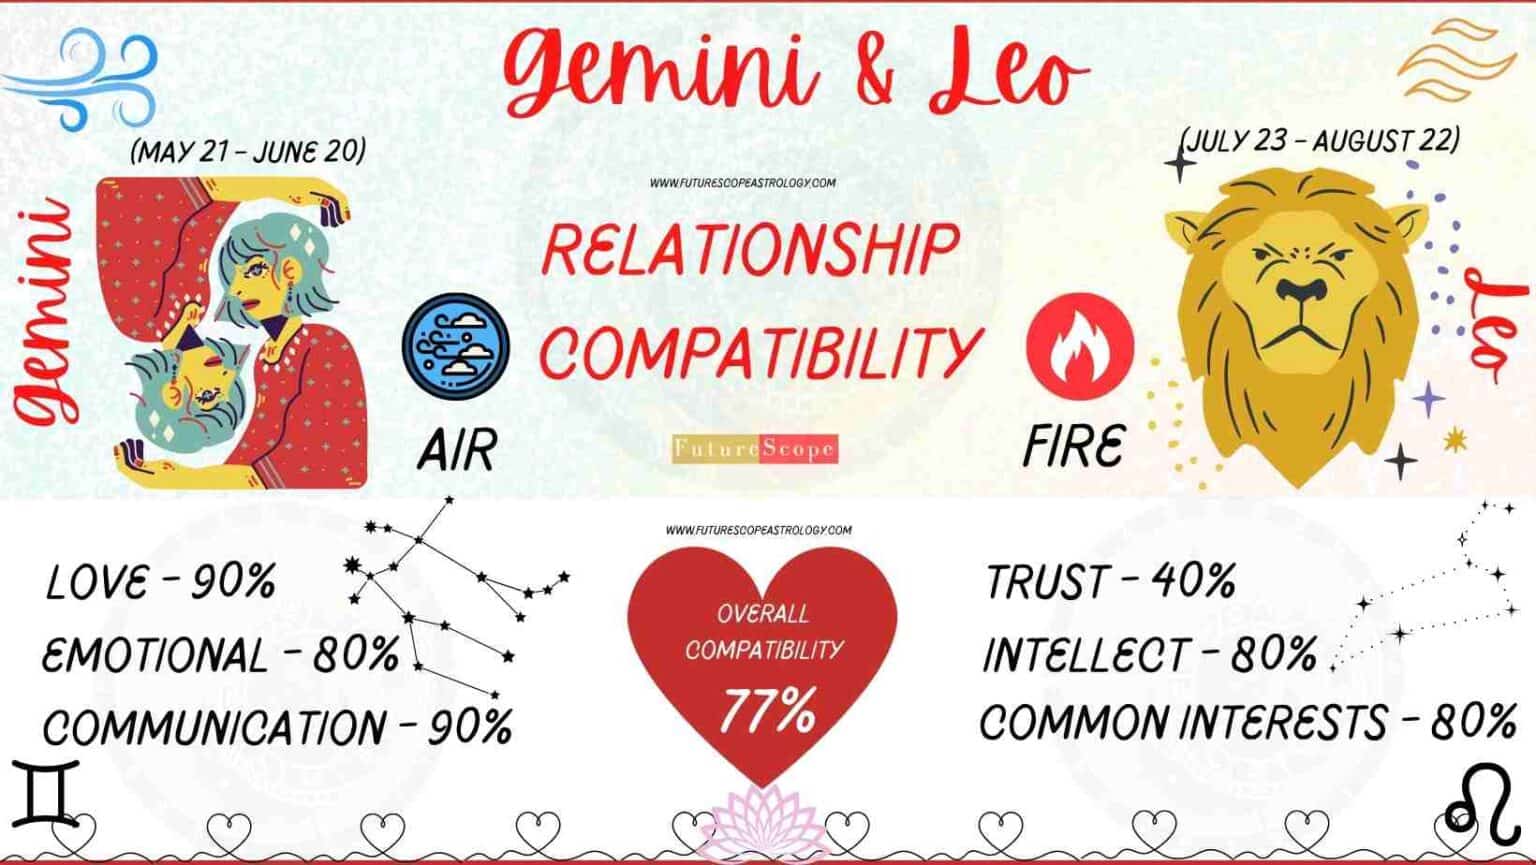 os leo and gemini compatibility